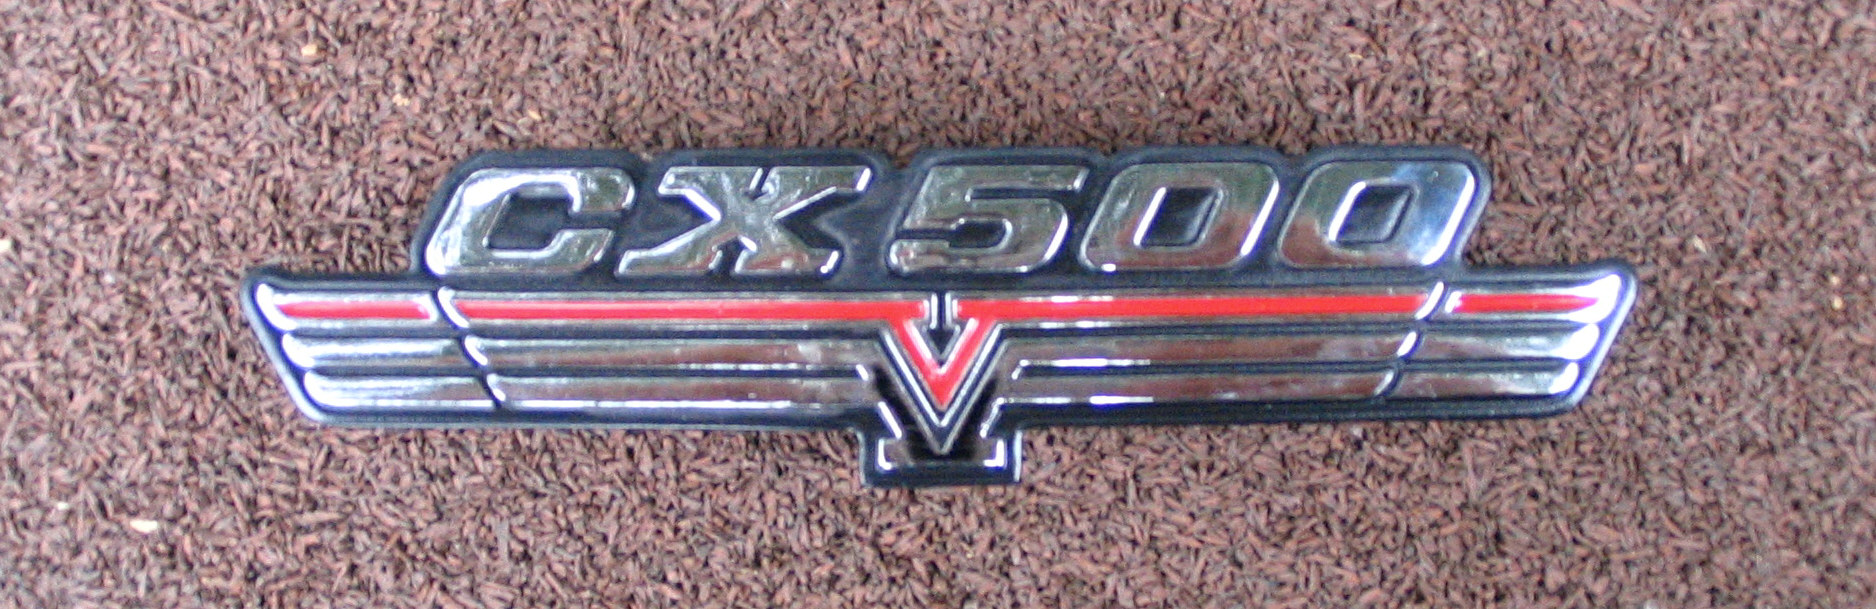 Honda cb550 side cover emblems #6